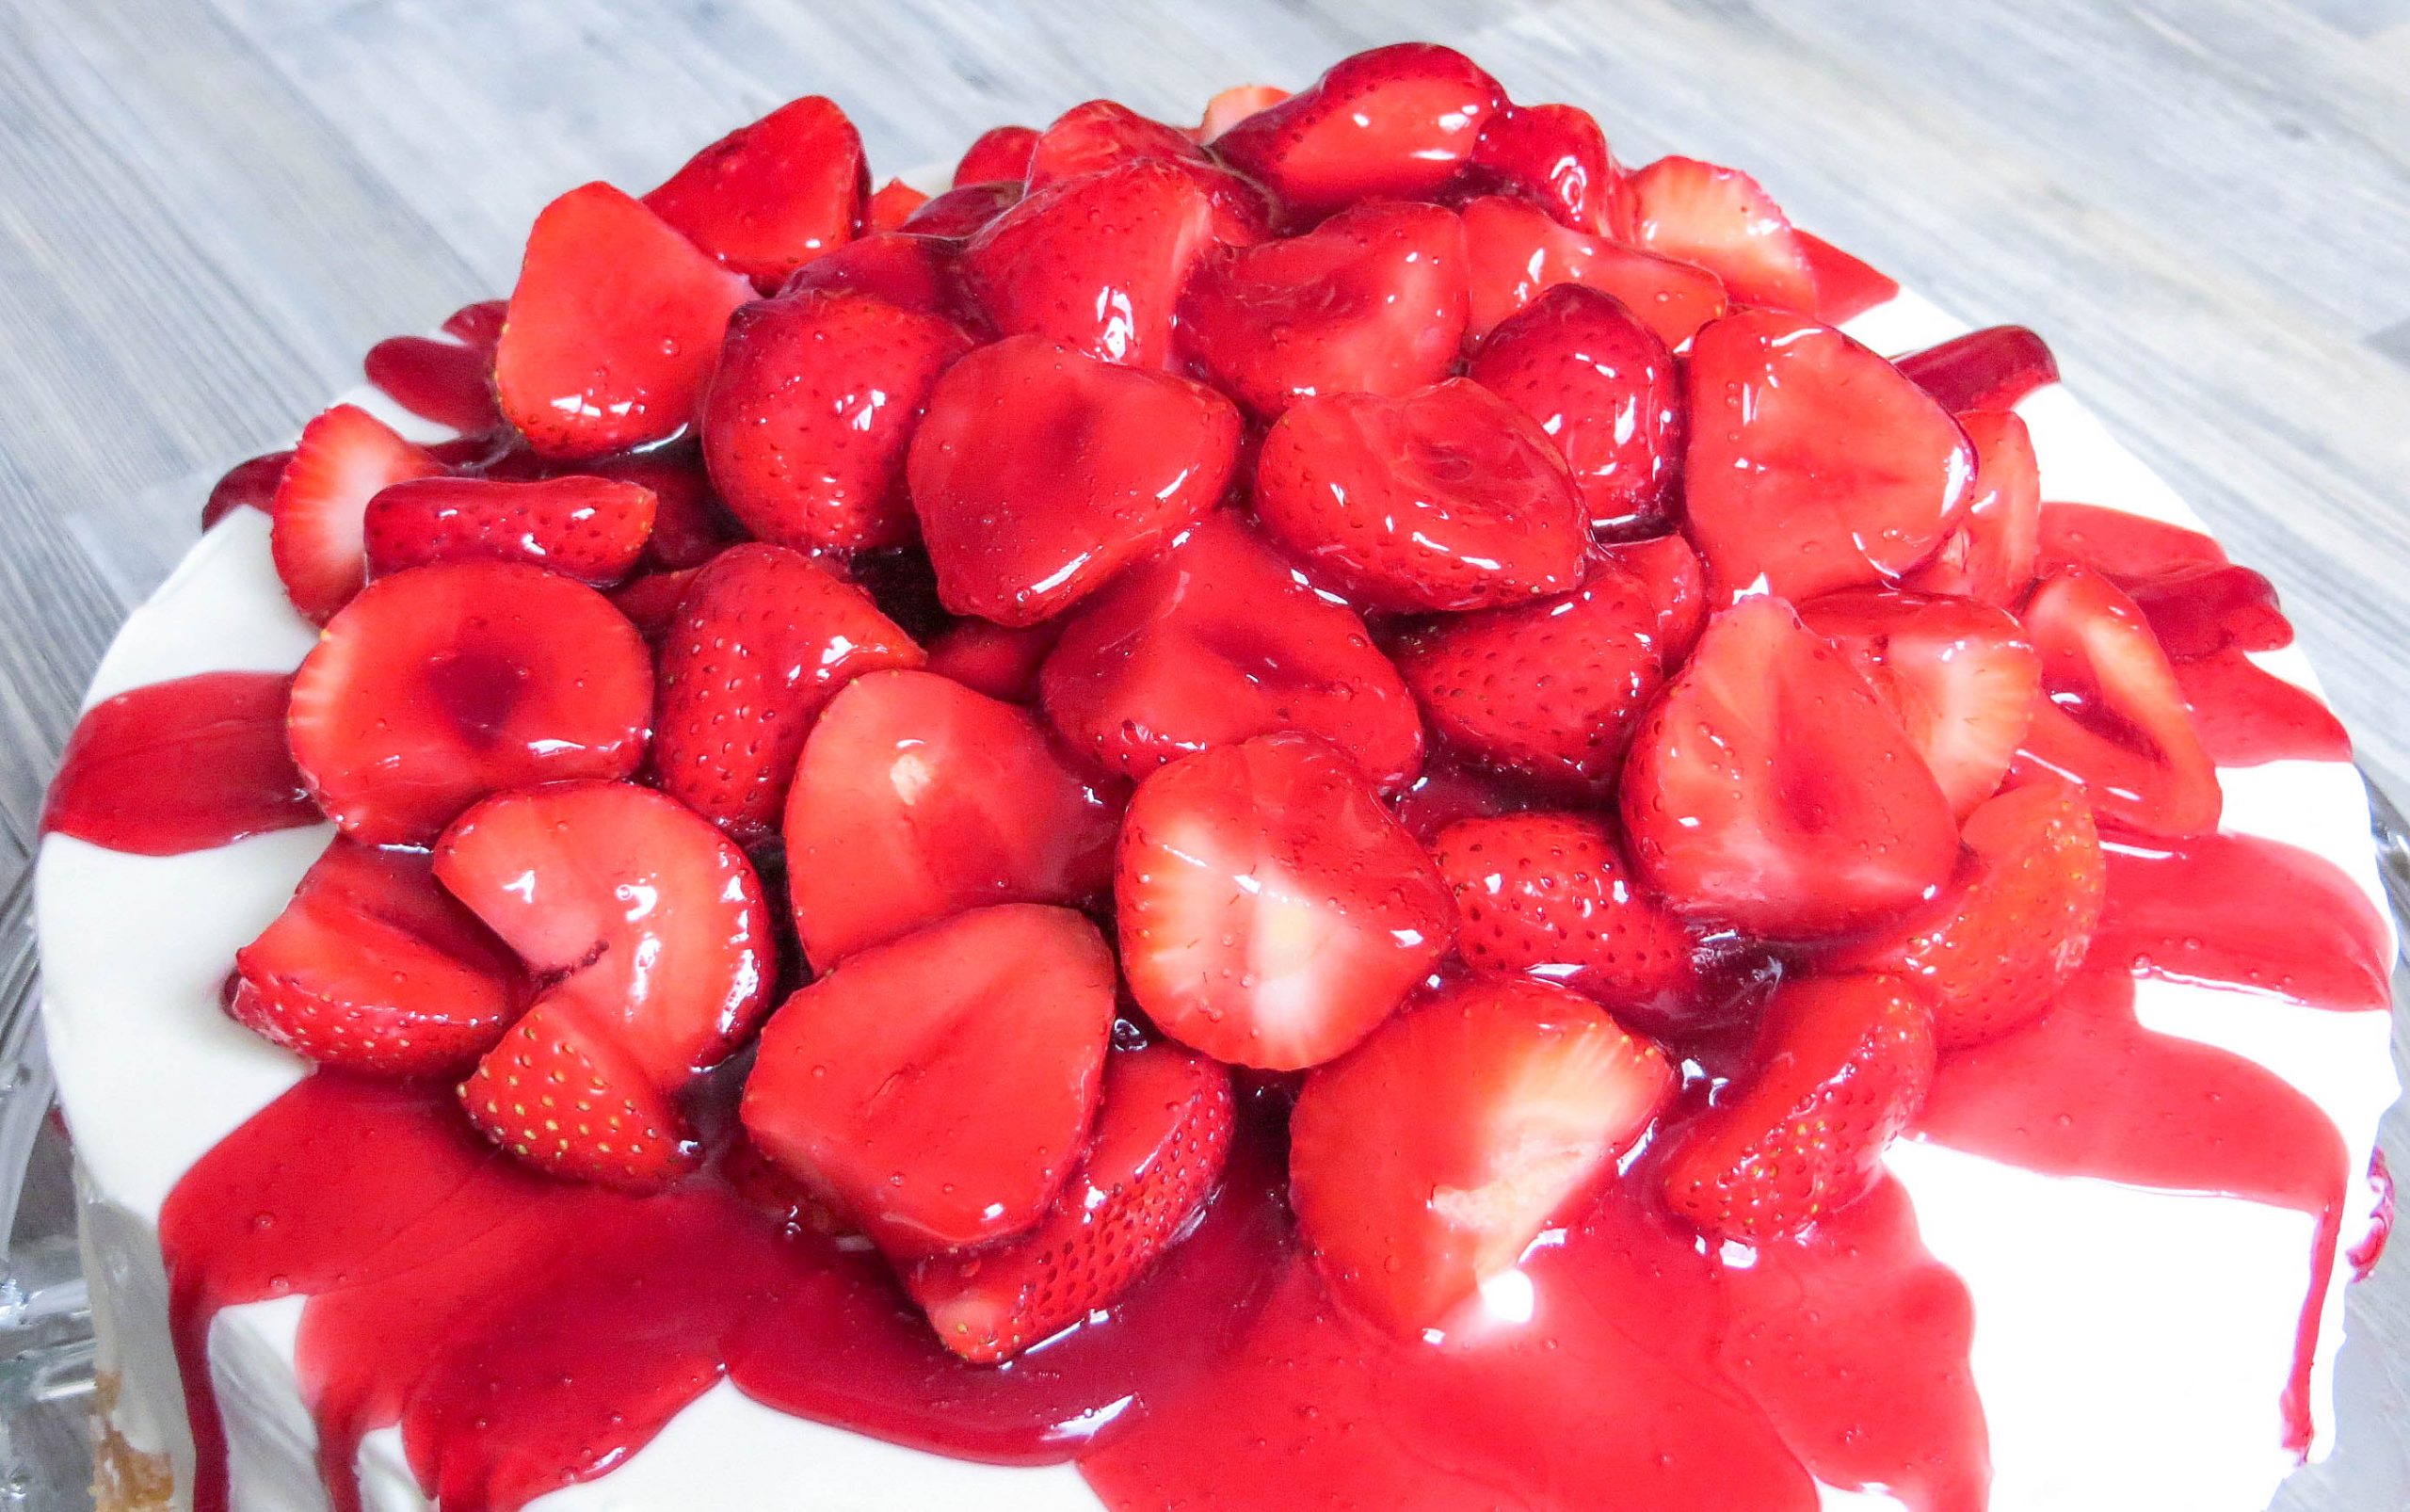 Erdbeer-Pfirsich-Torte – Food with Love – Thermomix Rezepte mit Herz